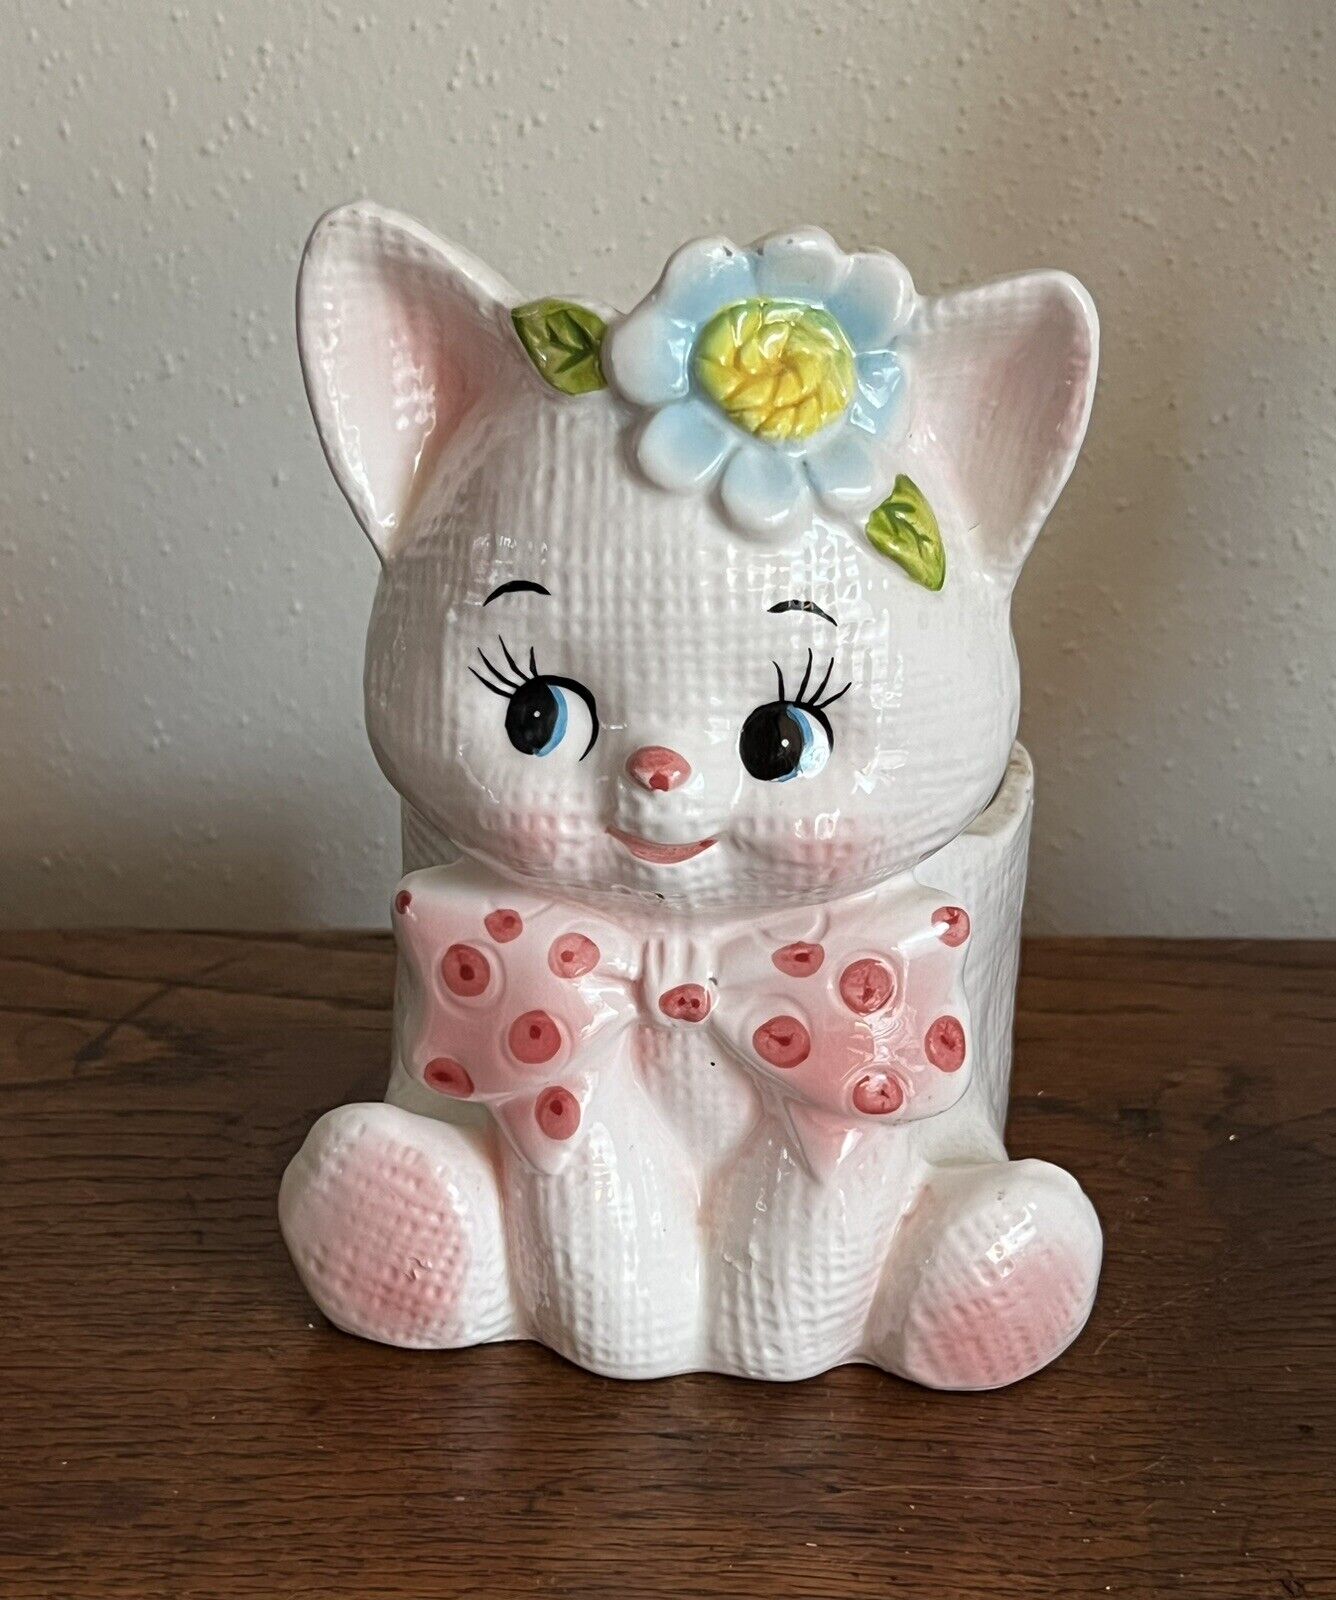 Antique Fenton Ceramic Kitten Planter 5741 Polka Dot Bow & Flower Made In Japan